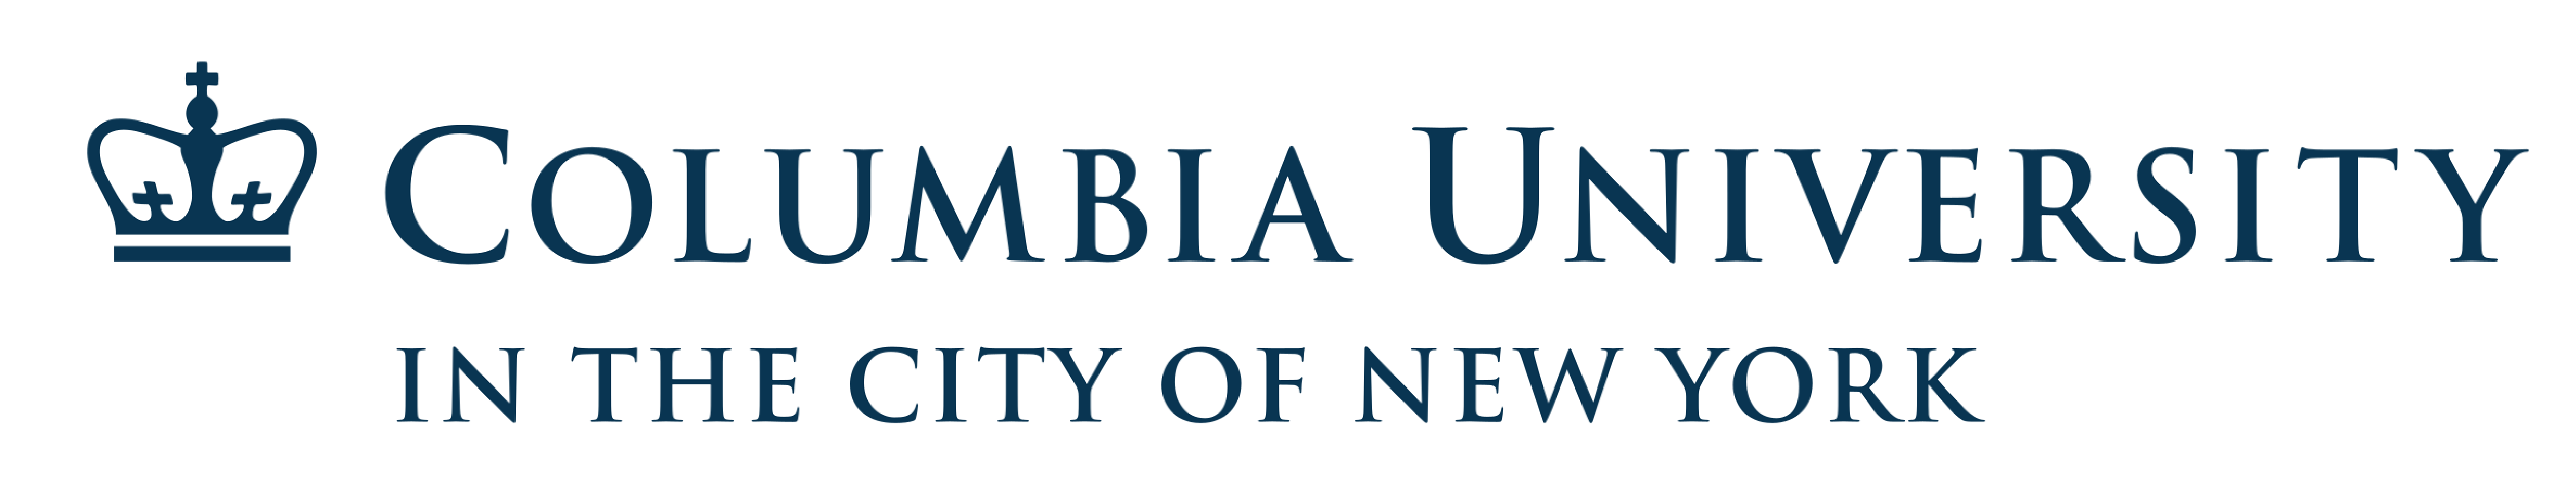 Columbia_University-Logo